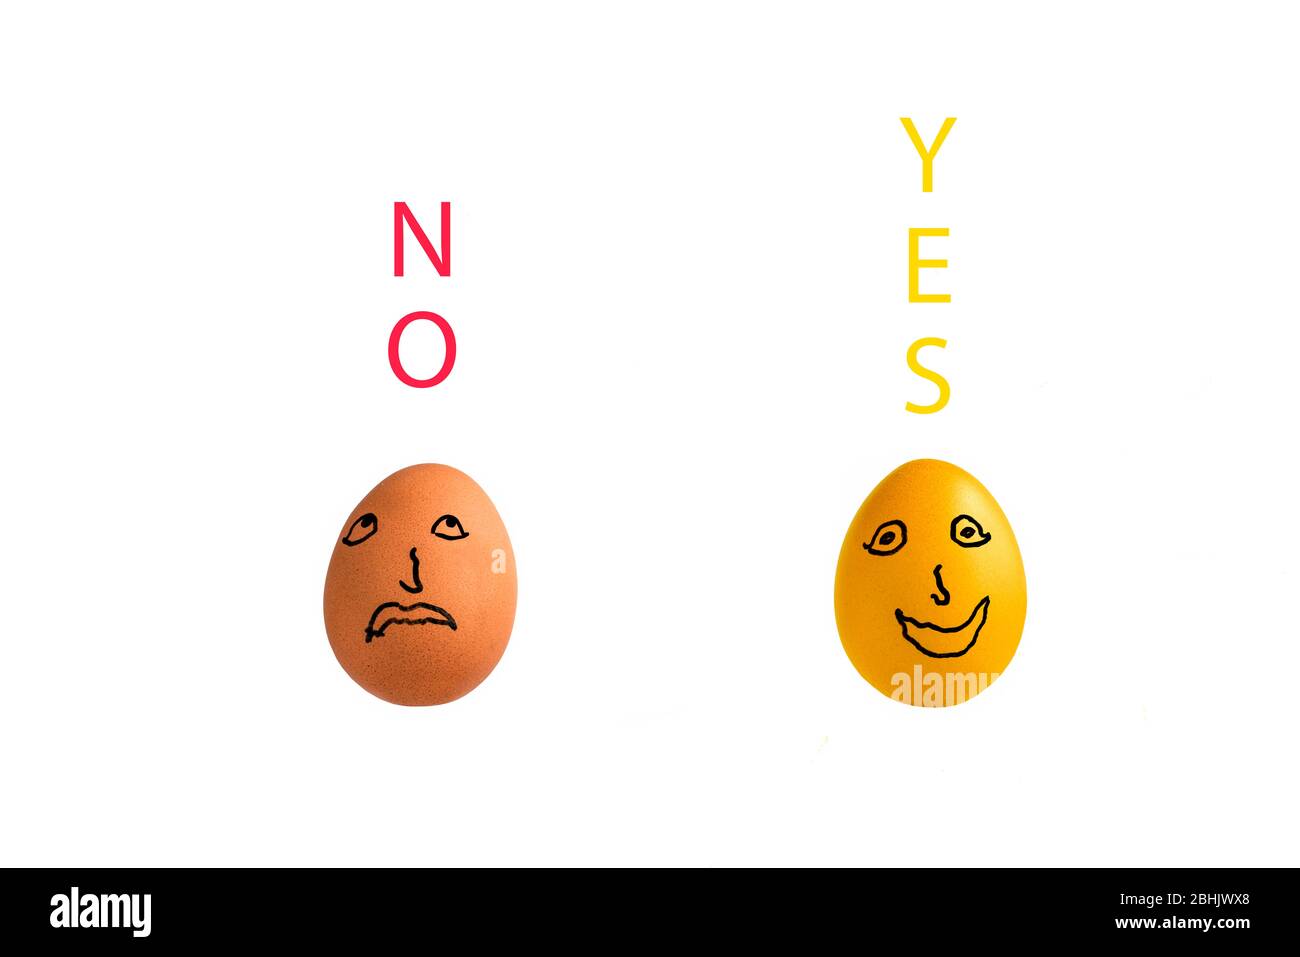 Due uova di pollo, una dorata su sfondo bianco con NO e si sopra le uova. Concetto: Rivelazione, ispirazione, epifania, decisioni geniali Foto Stock